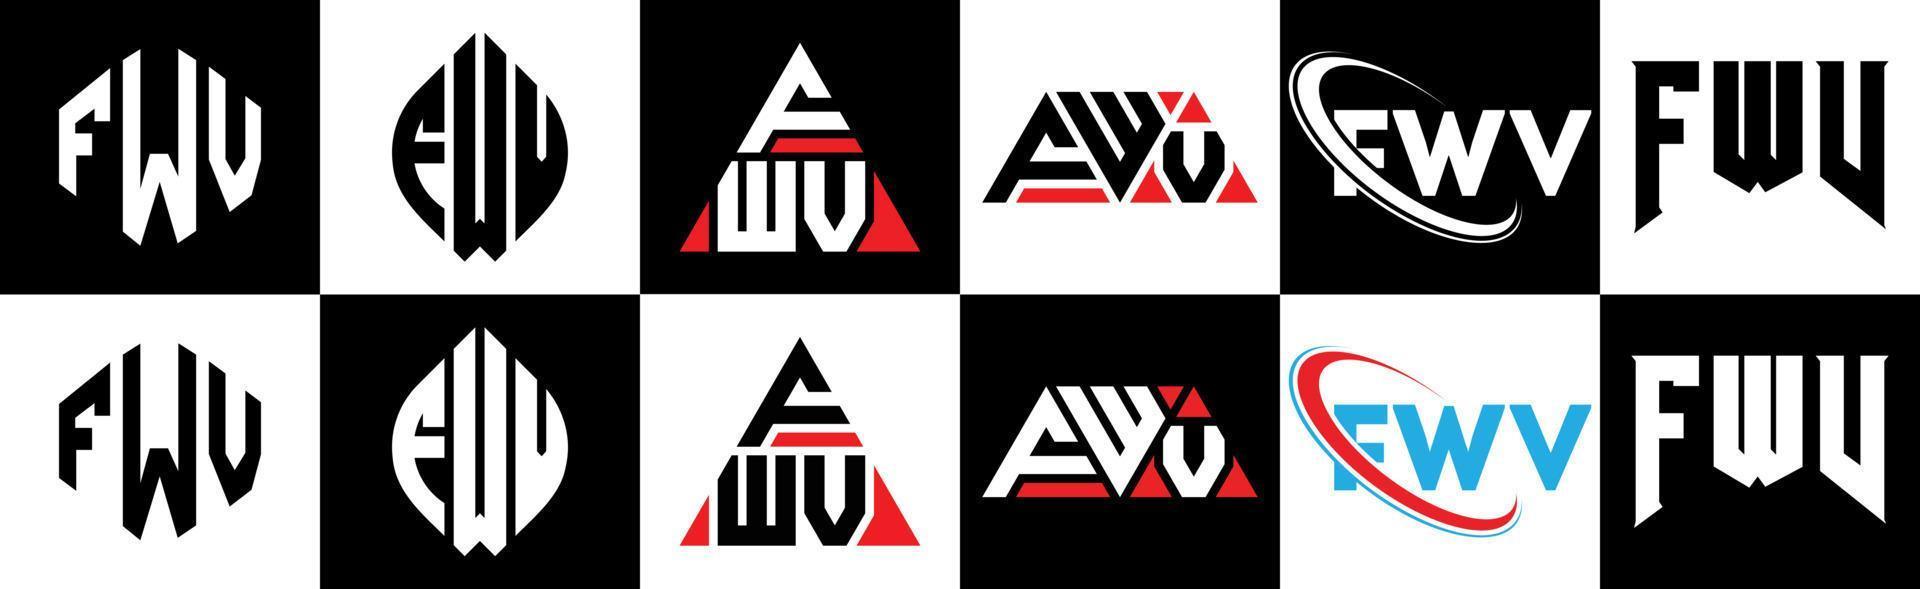 création de logo de lettre fwv en six styles. polygone fwv, cercle, triangle, hexagone, style plat et simple avec logo de lettre de variation de couleur noir et blanc dans un plan de travail. logo fwv minimaliste et classique vecteur